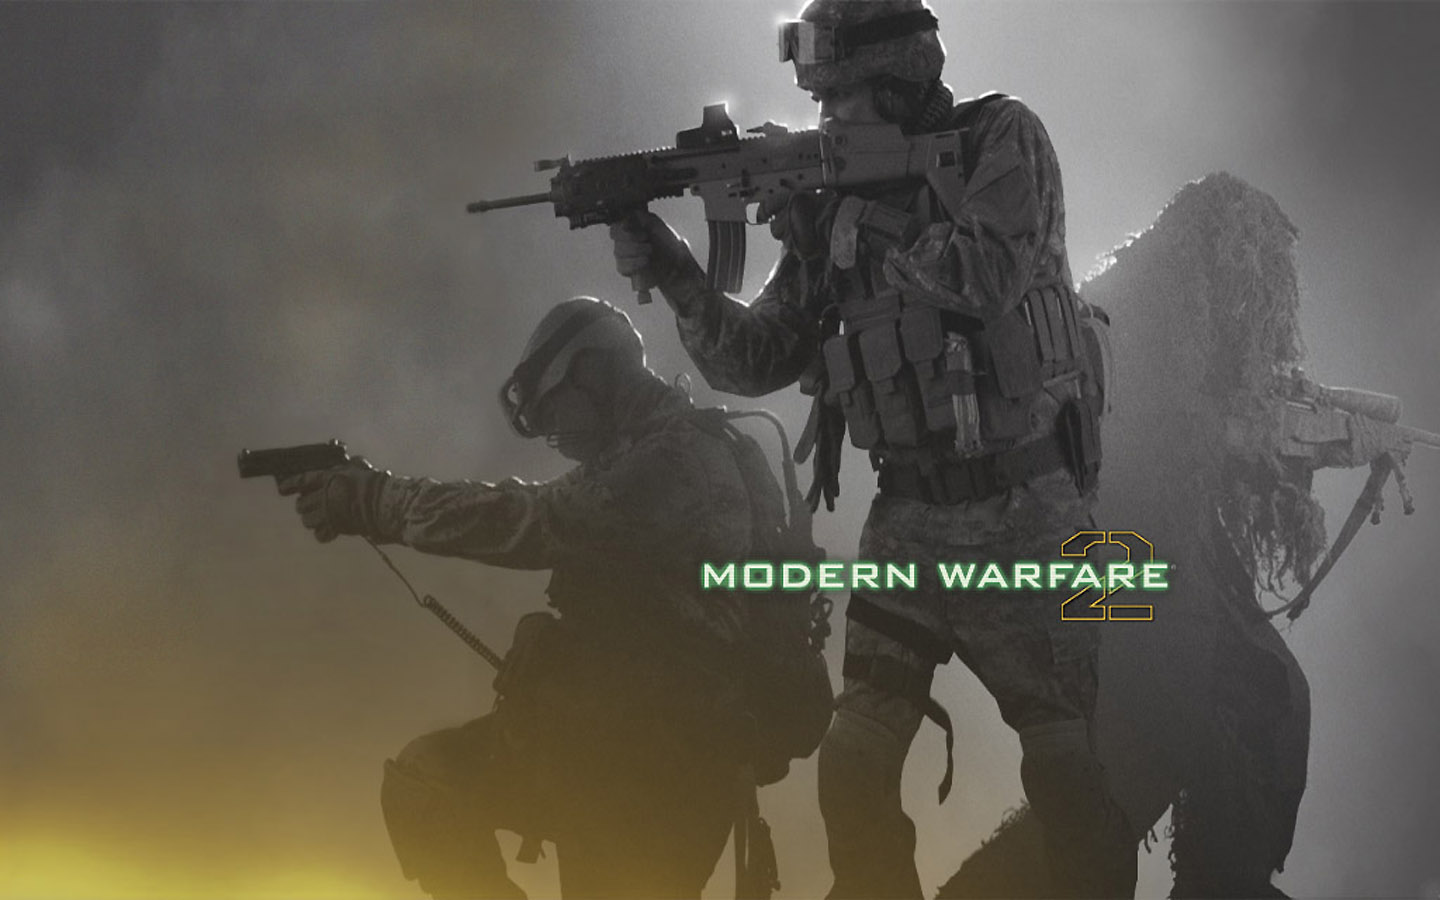 HD modern warfare 2 wallpapers  Peakpx